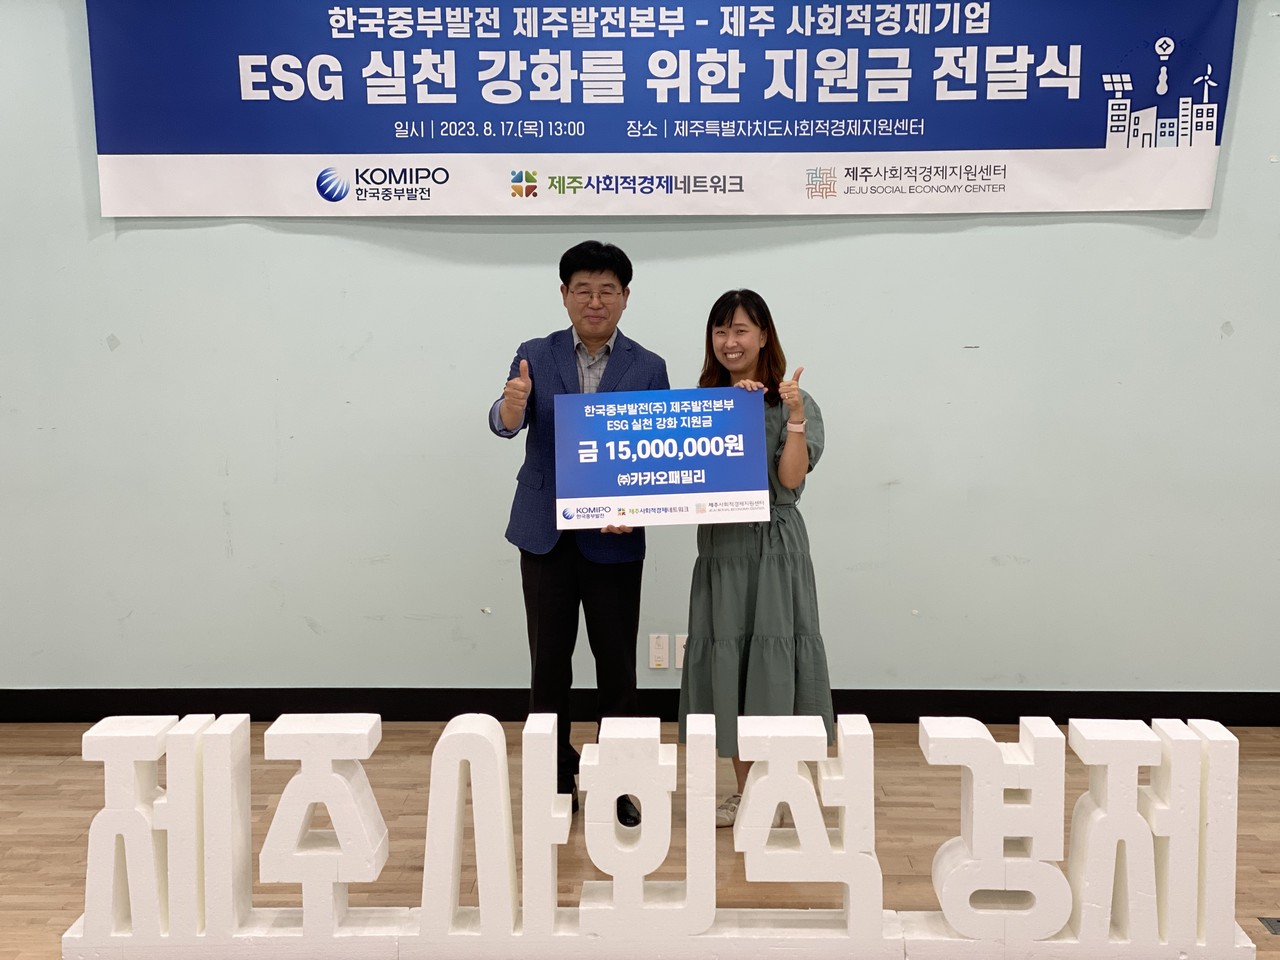 카카오패밀리, ‘사회적기업 ESG 실천강화 프로젝트’ 참가 기업으로 선정